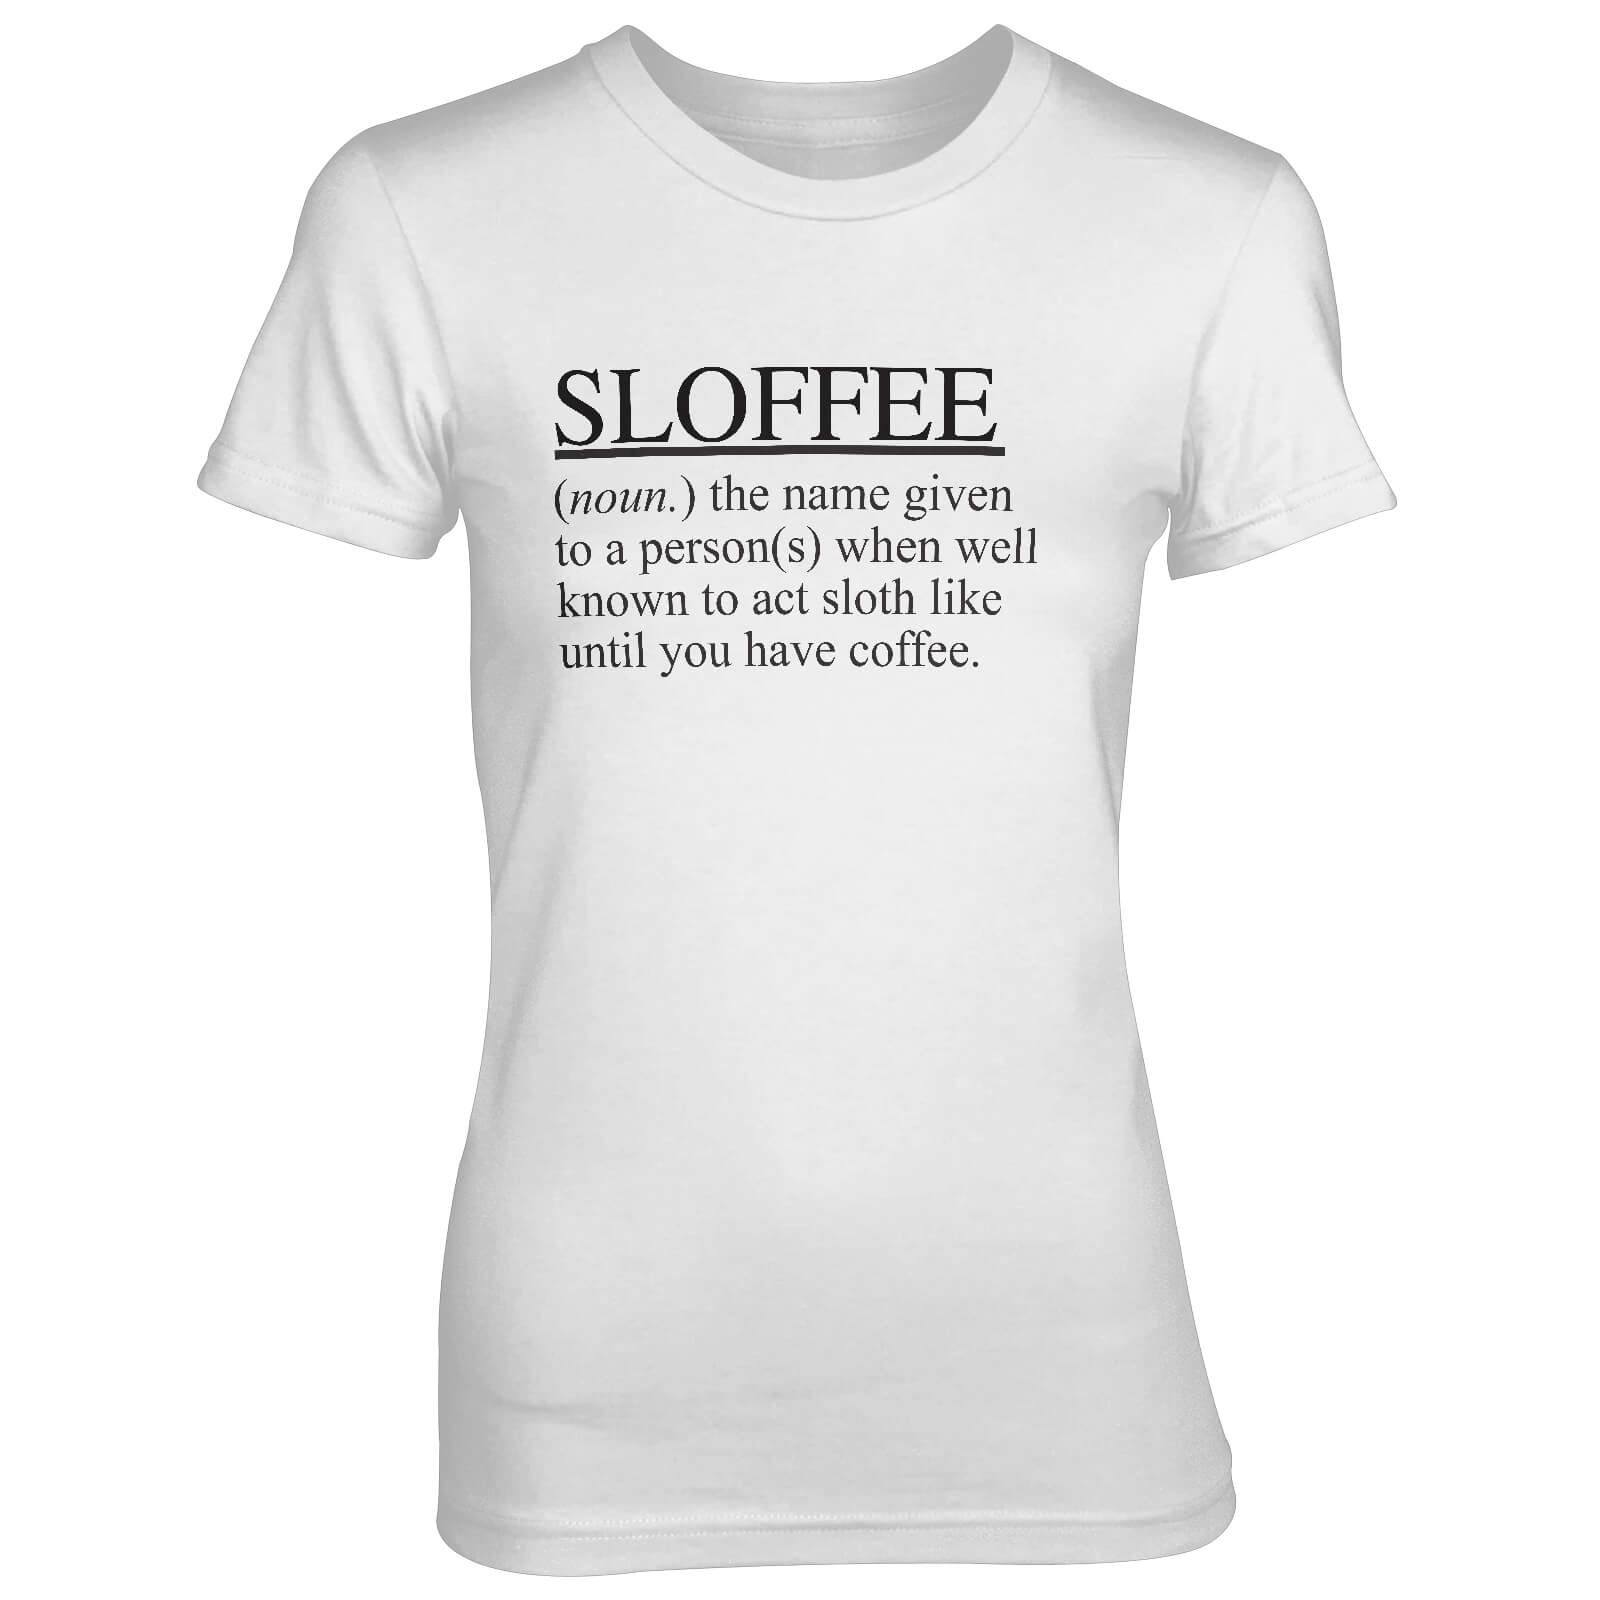 Sloffee Women's White T-Shirt - S - White